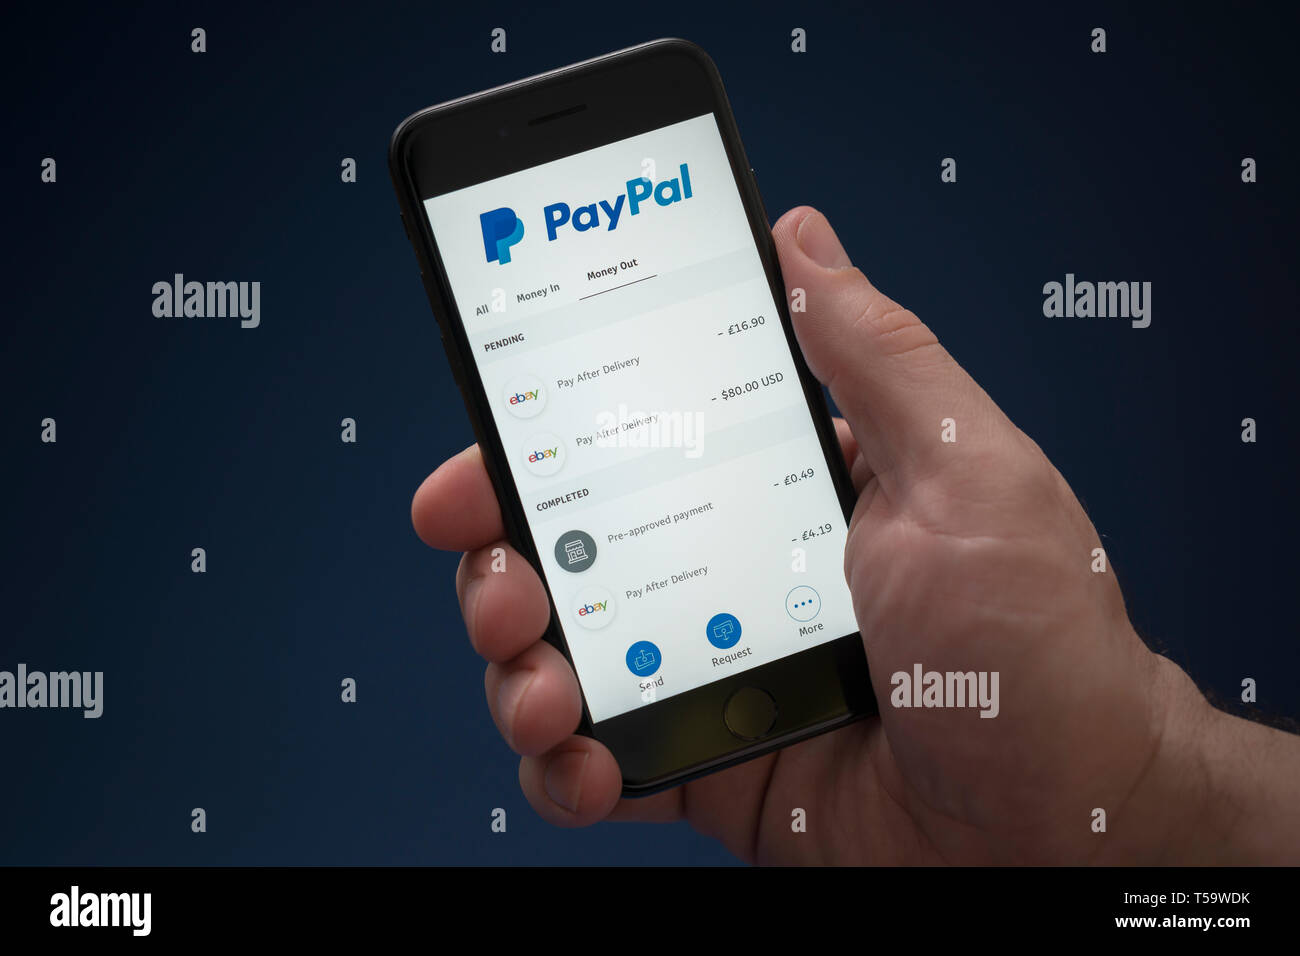 Un uomo guarda al suo iPhone che visualizza il logo di PayPal (solo uso editoriale). Foto Stock